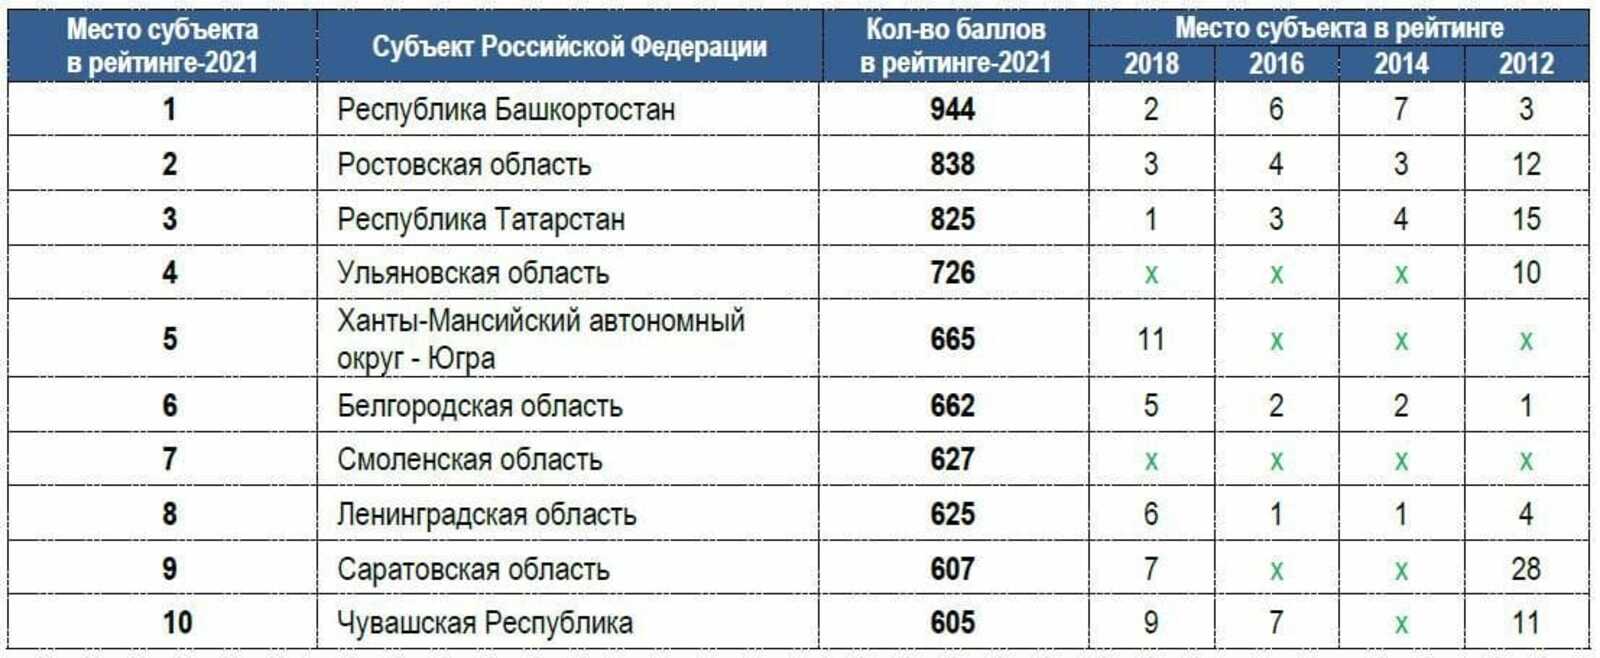 Башкортостан возглавил рейтинг регионов по уровню защищенности потребителей